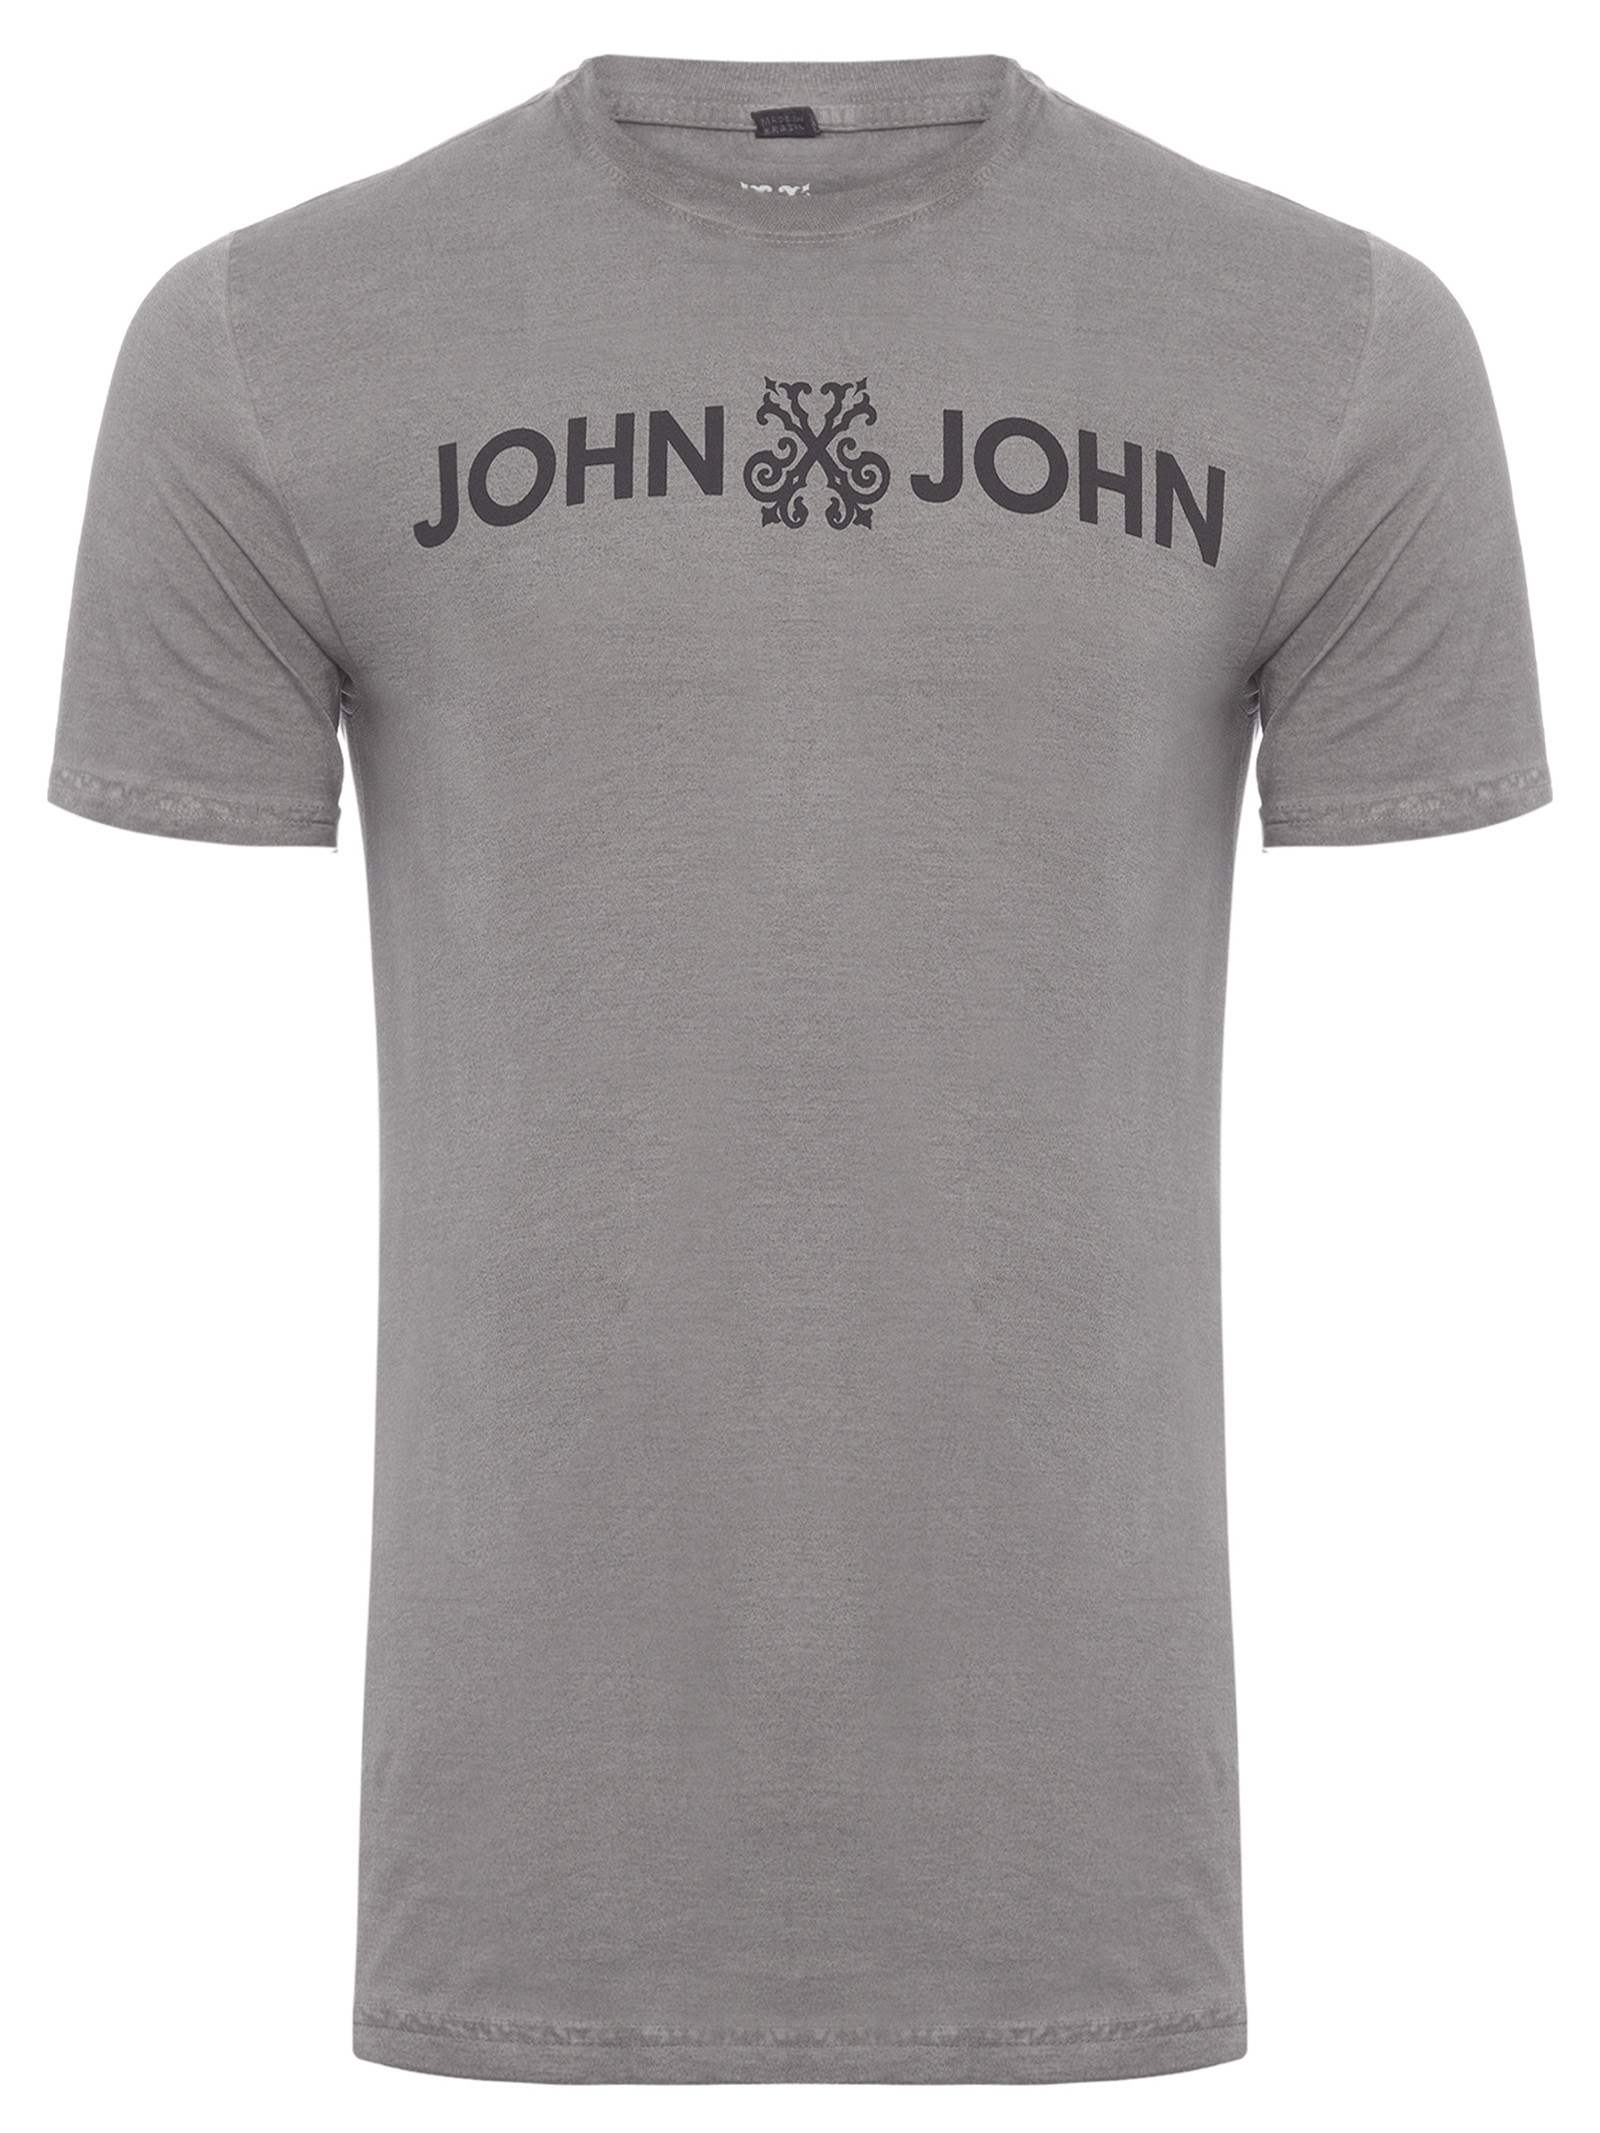 T-Shirt Masculina Basic - John John - Cinza - Shop2gether